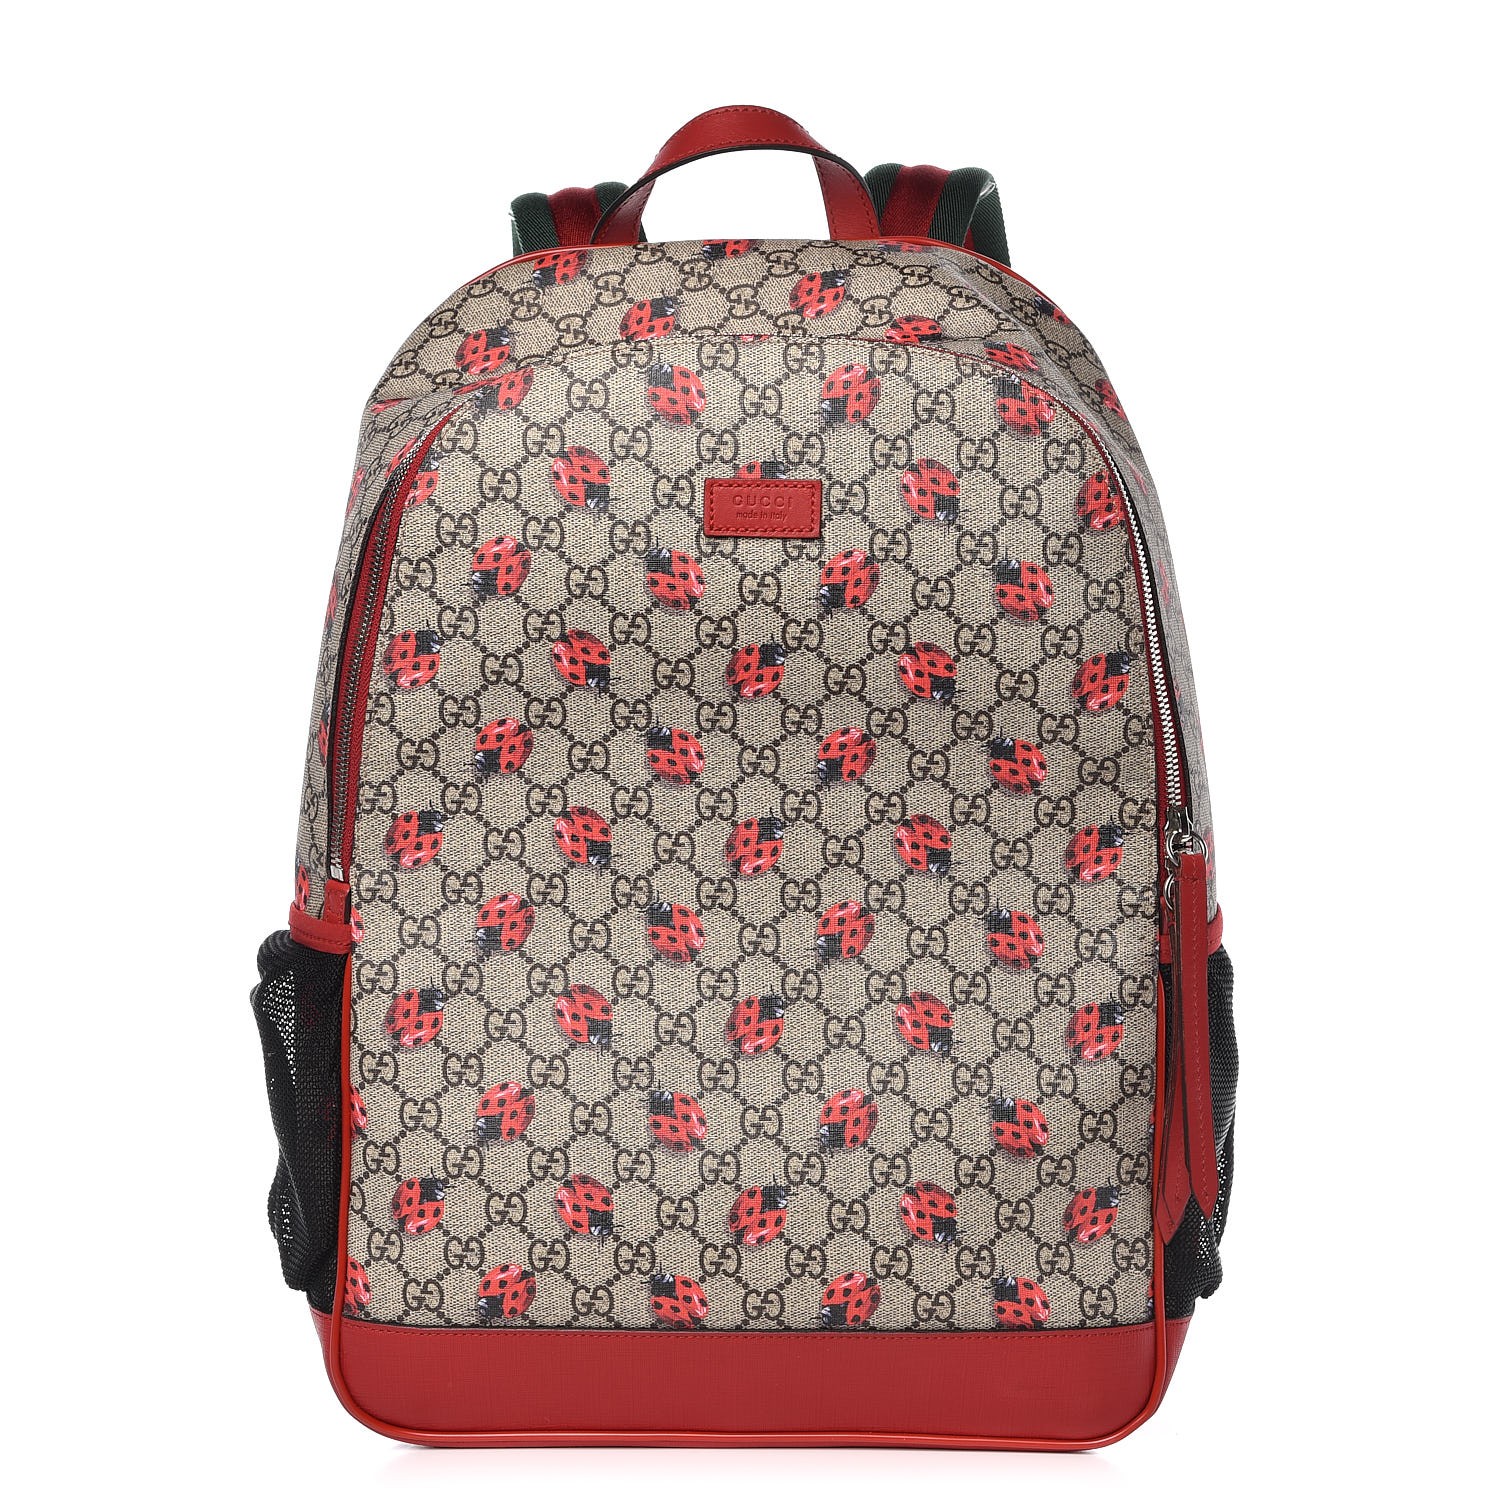 gucci ladybug backpack